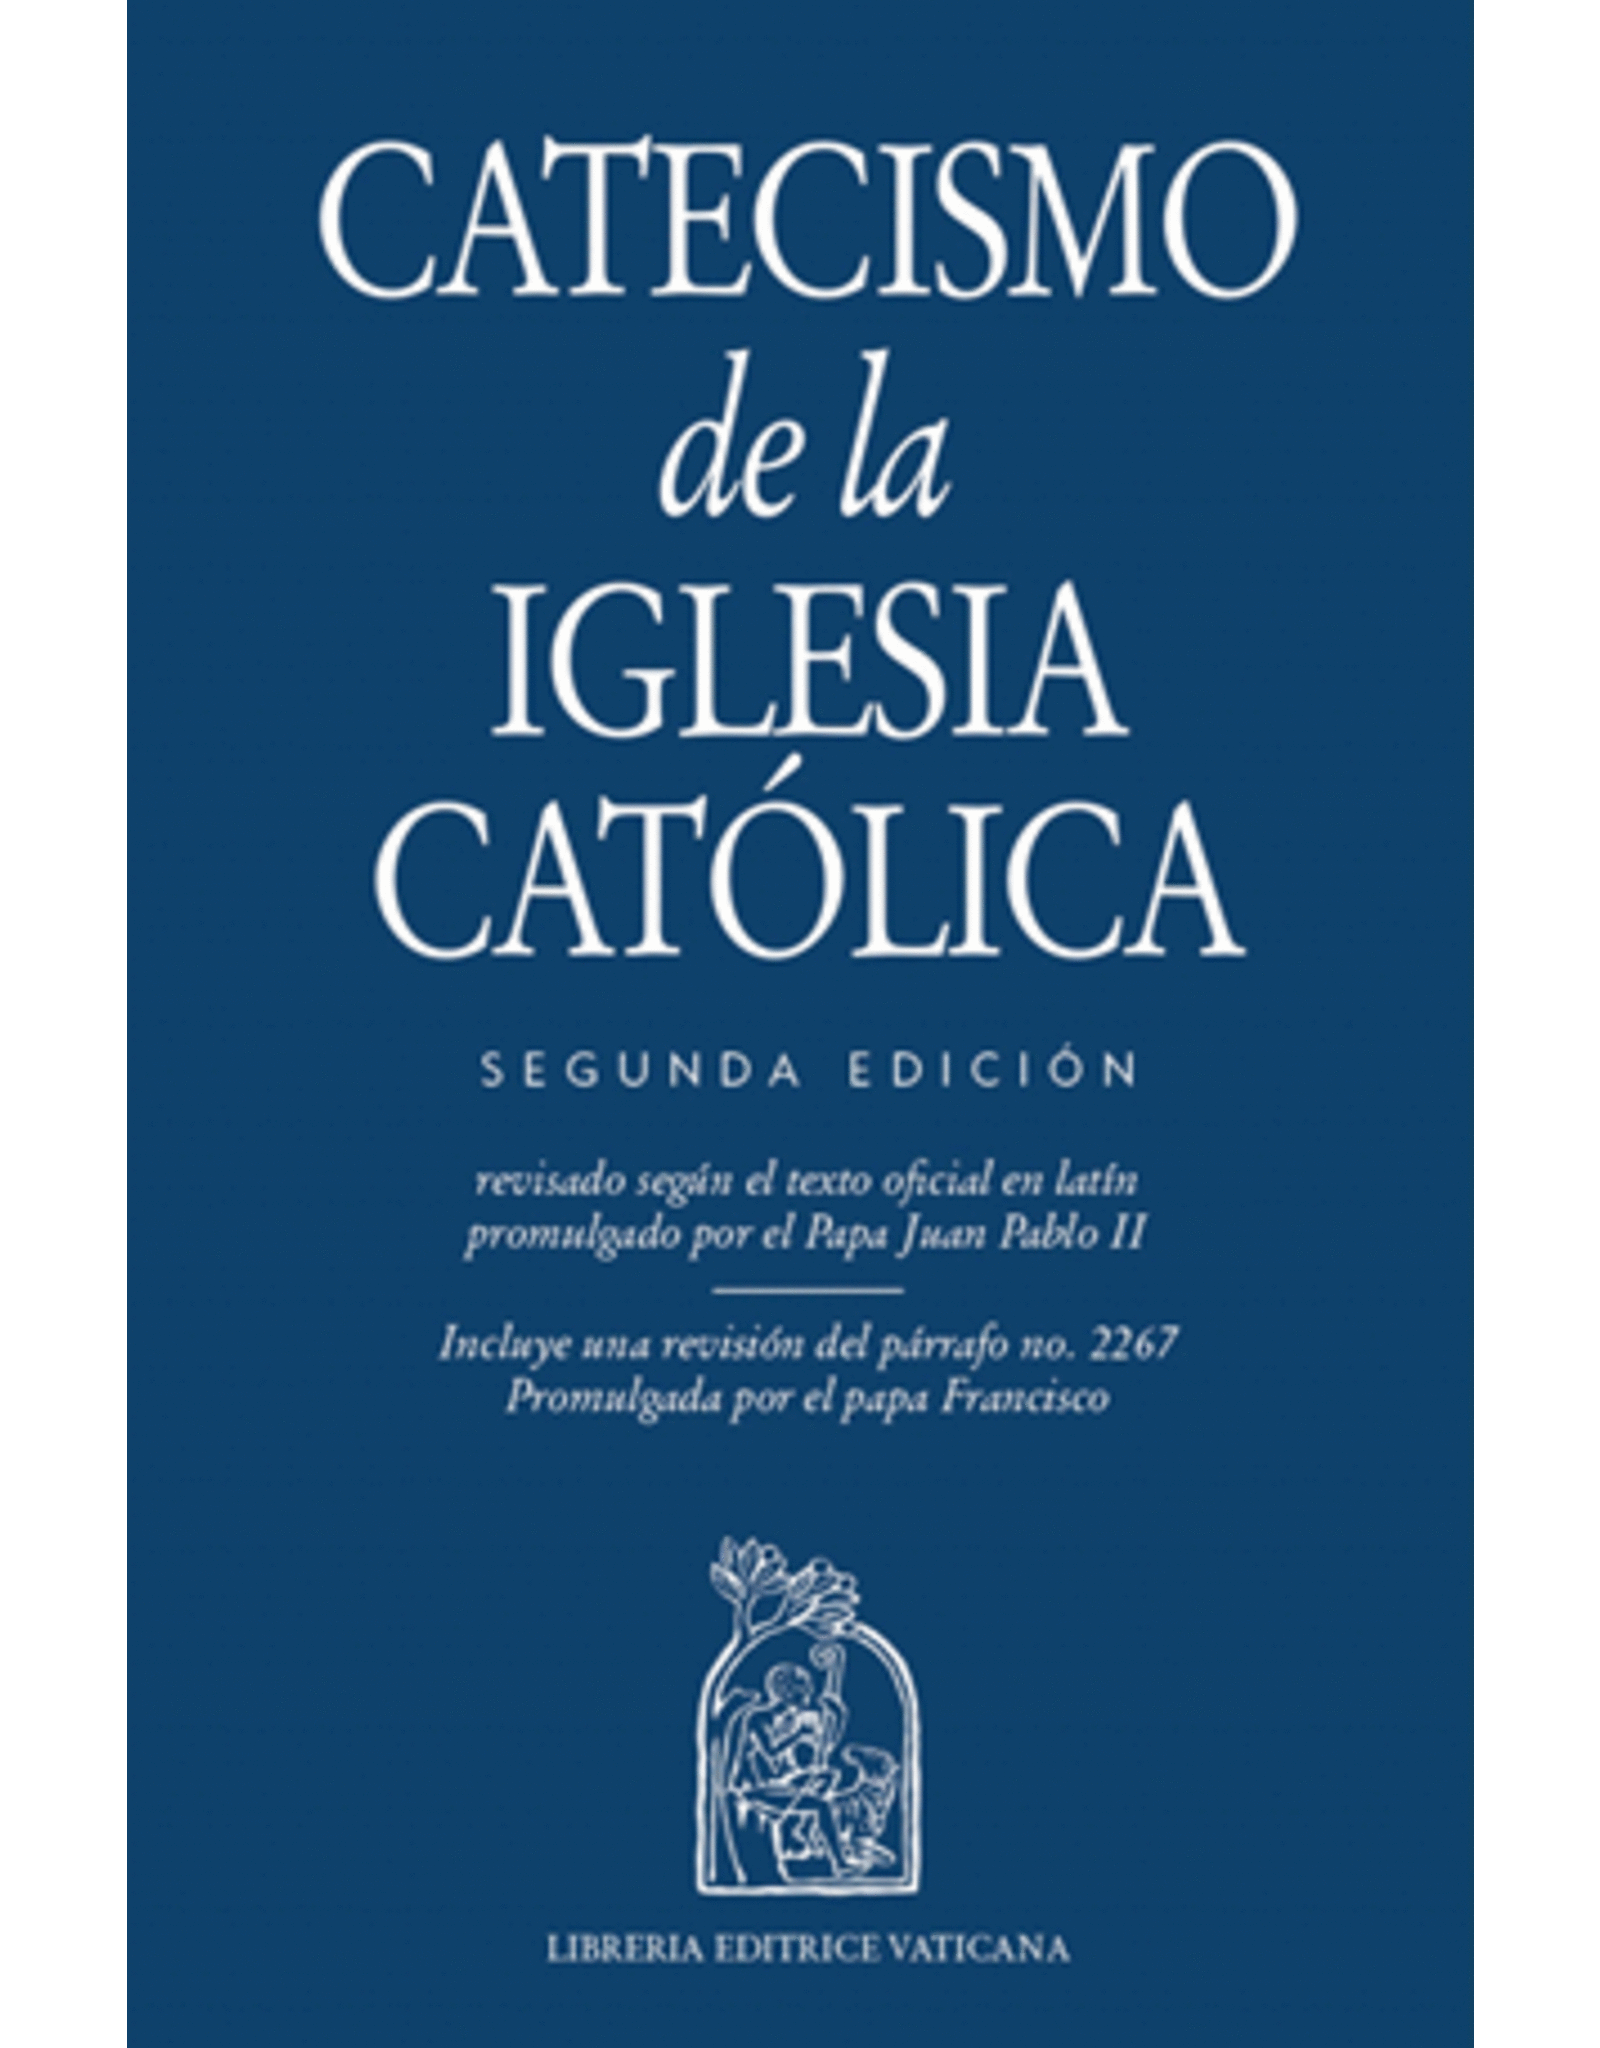 USCCB Catecismo de la Iglesia Catolica